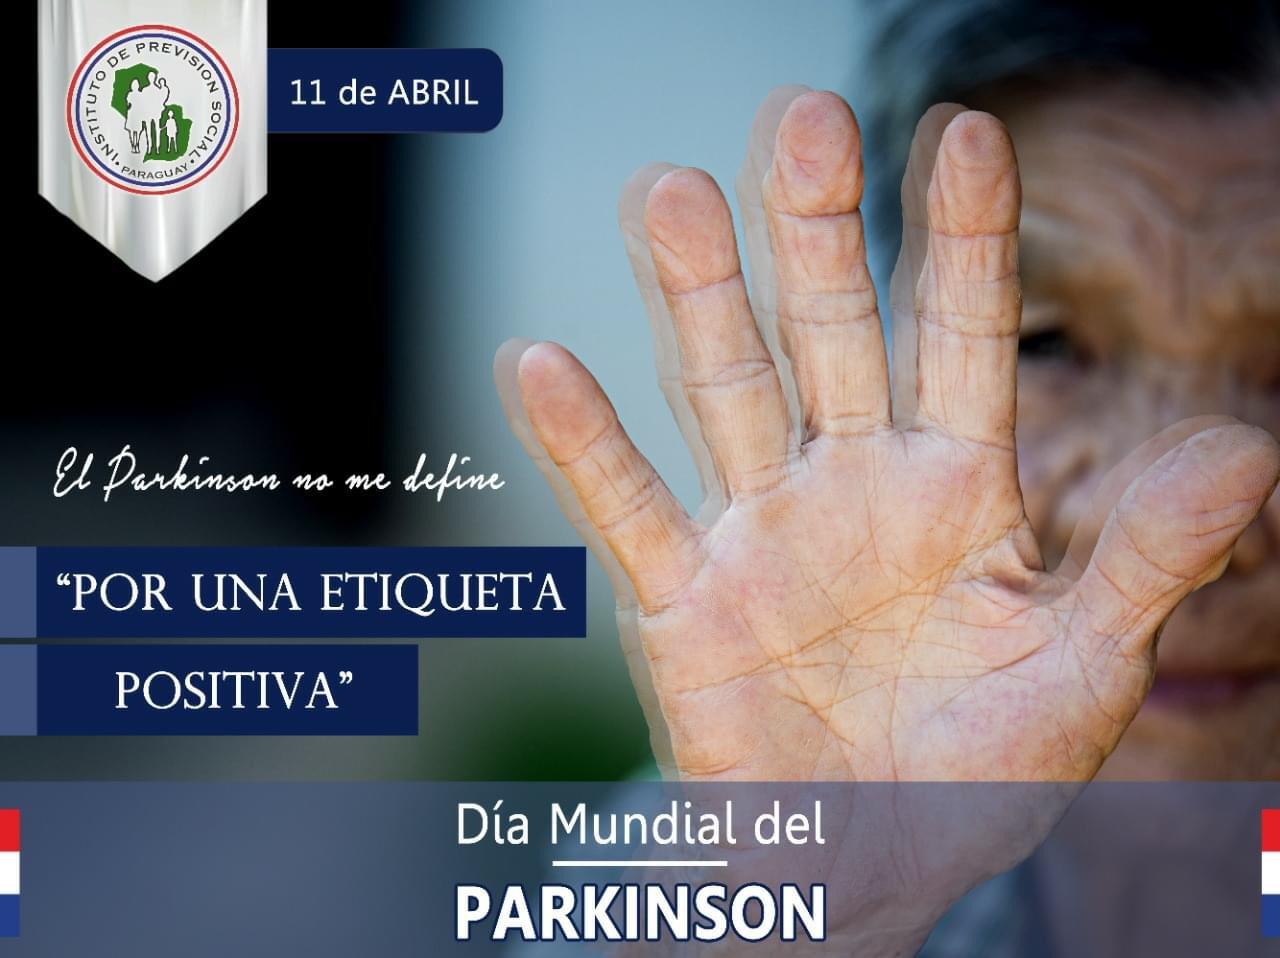 11 de abril: “Por una etiqueta positiva en el Día Mundial del Parkinson” 